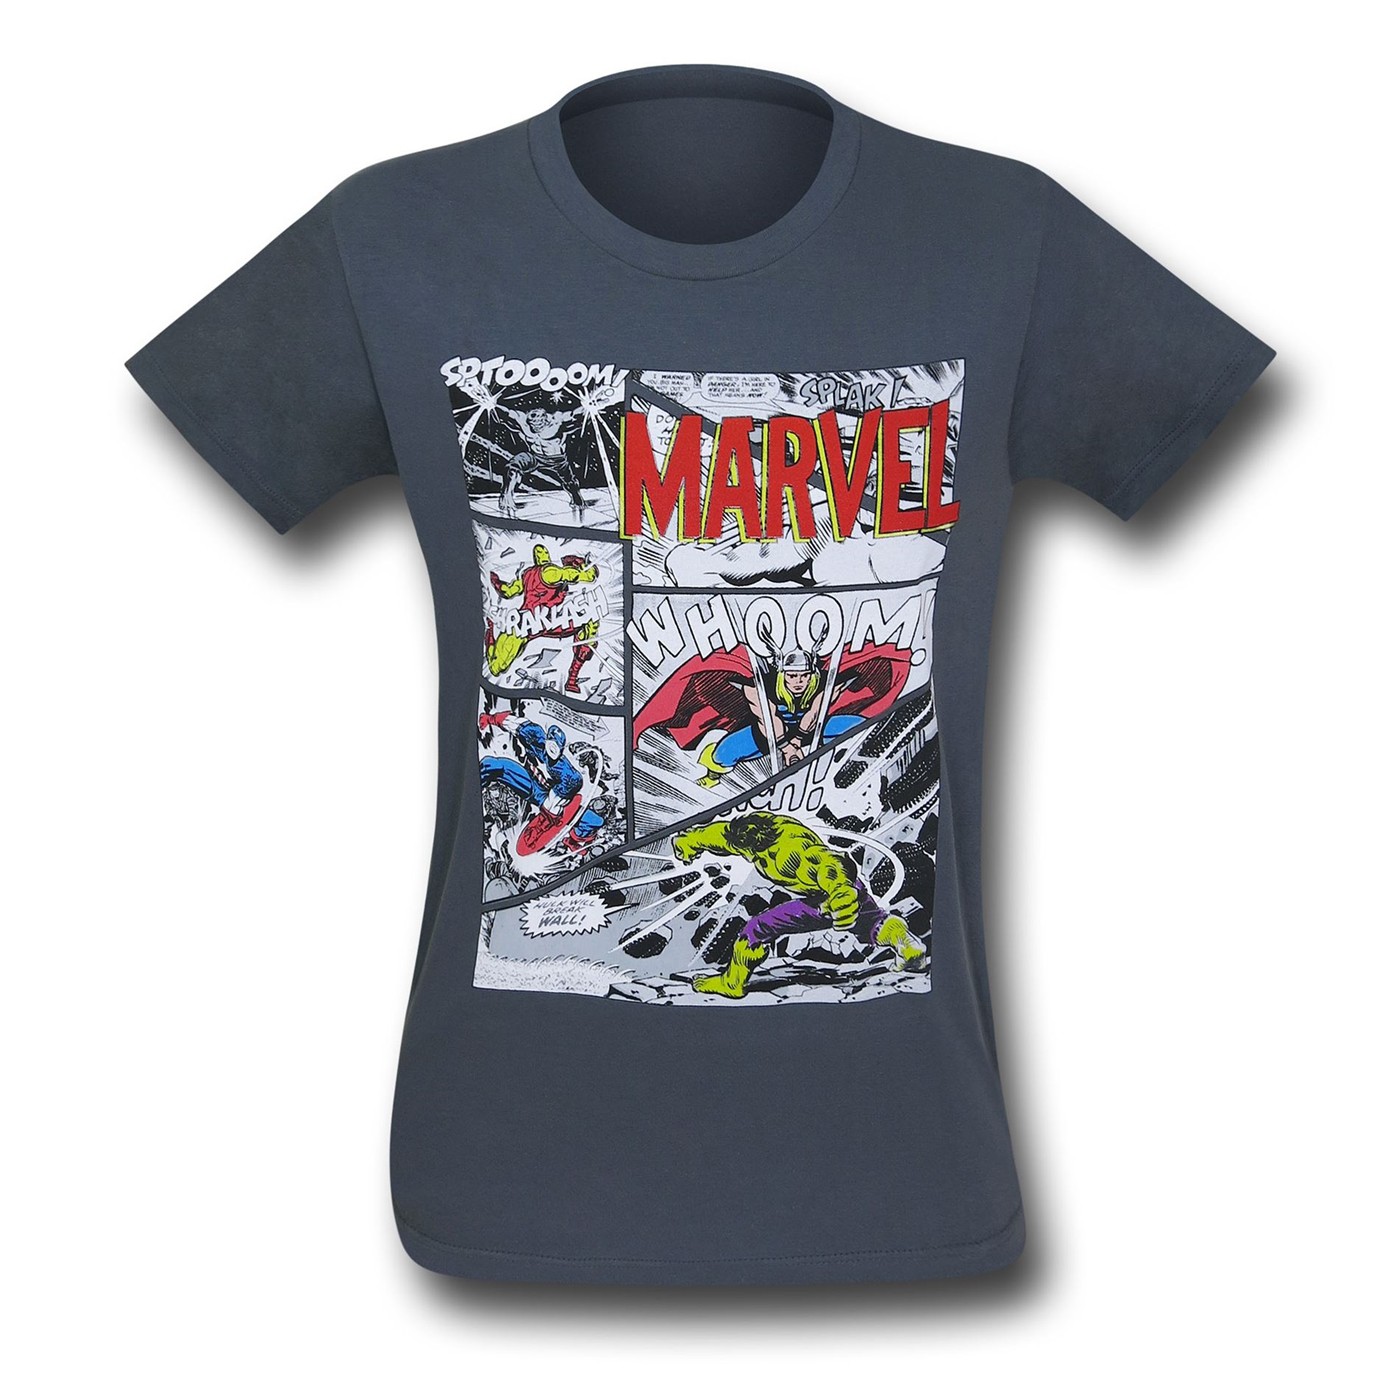 Avengers Classic Panels on Charcoal T-Shirt